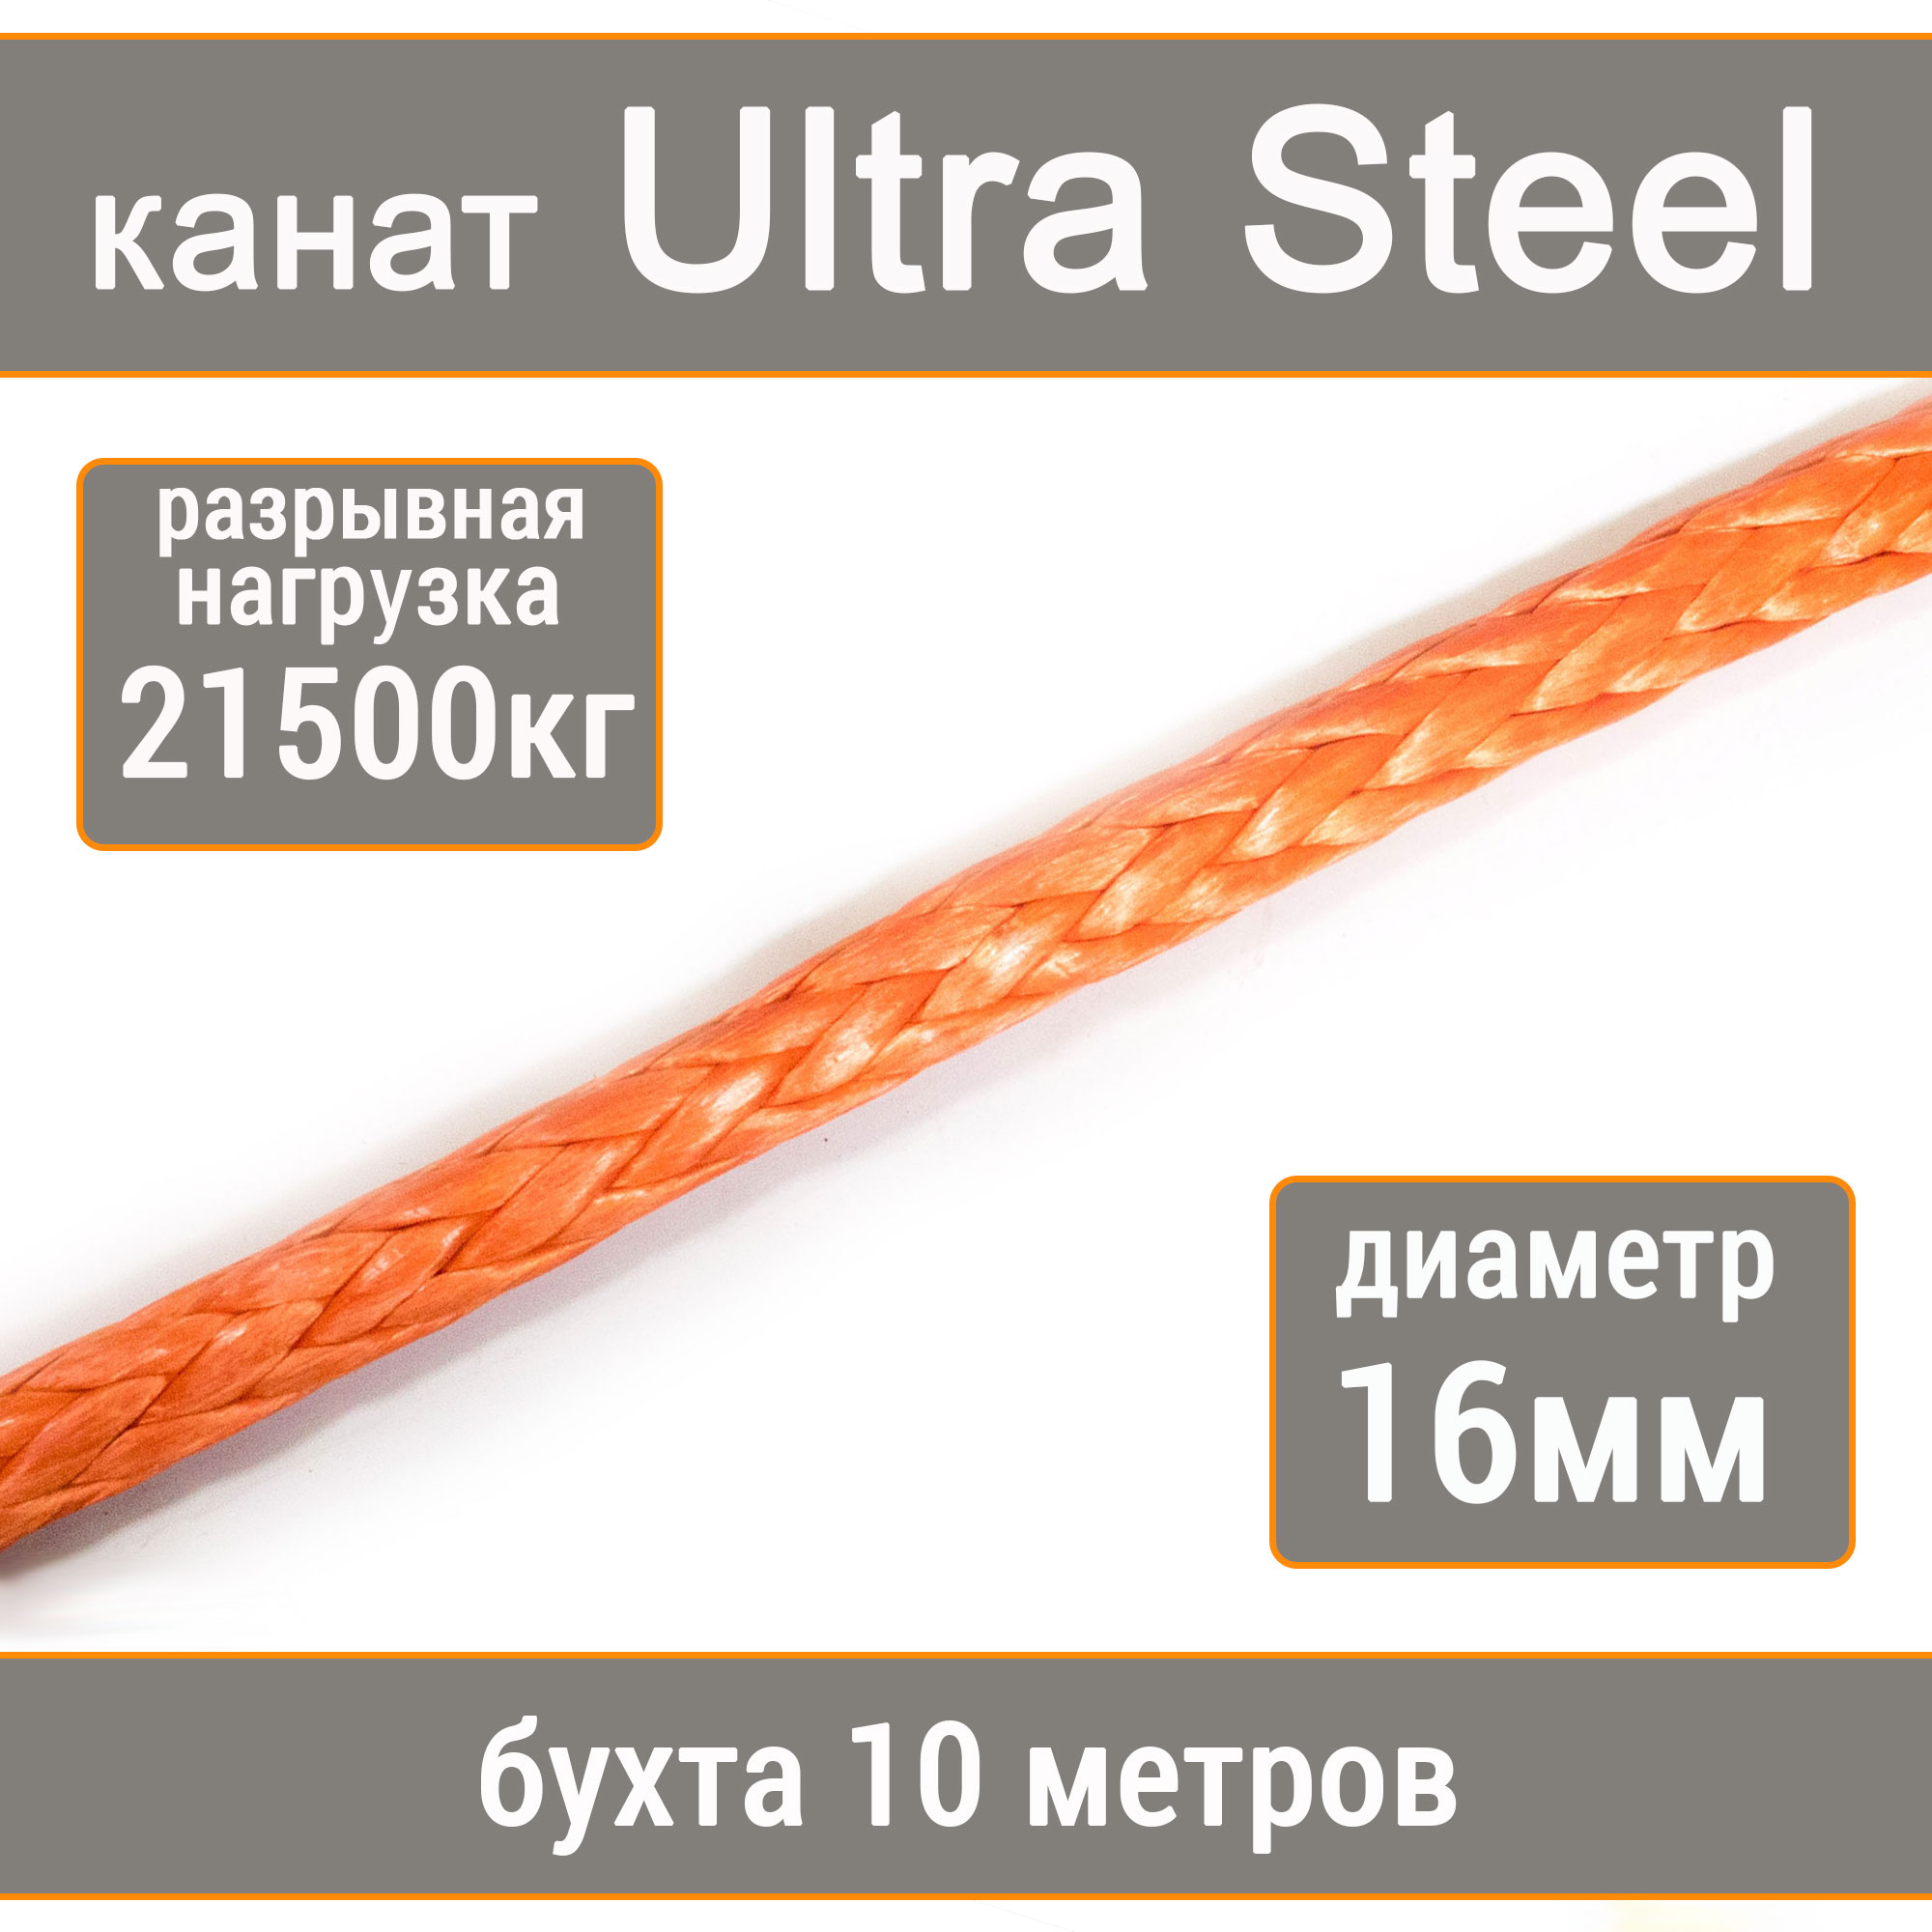 Высокопрочный синтетический канат UTX Ultra Steel 16мм р.н.21500кг, 007654321-1016 pet star игрушка для cобак канат с попугаем с пищалкой